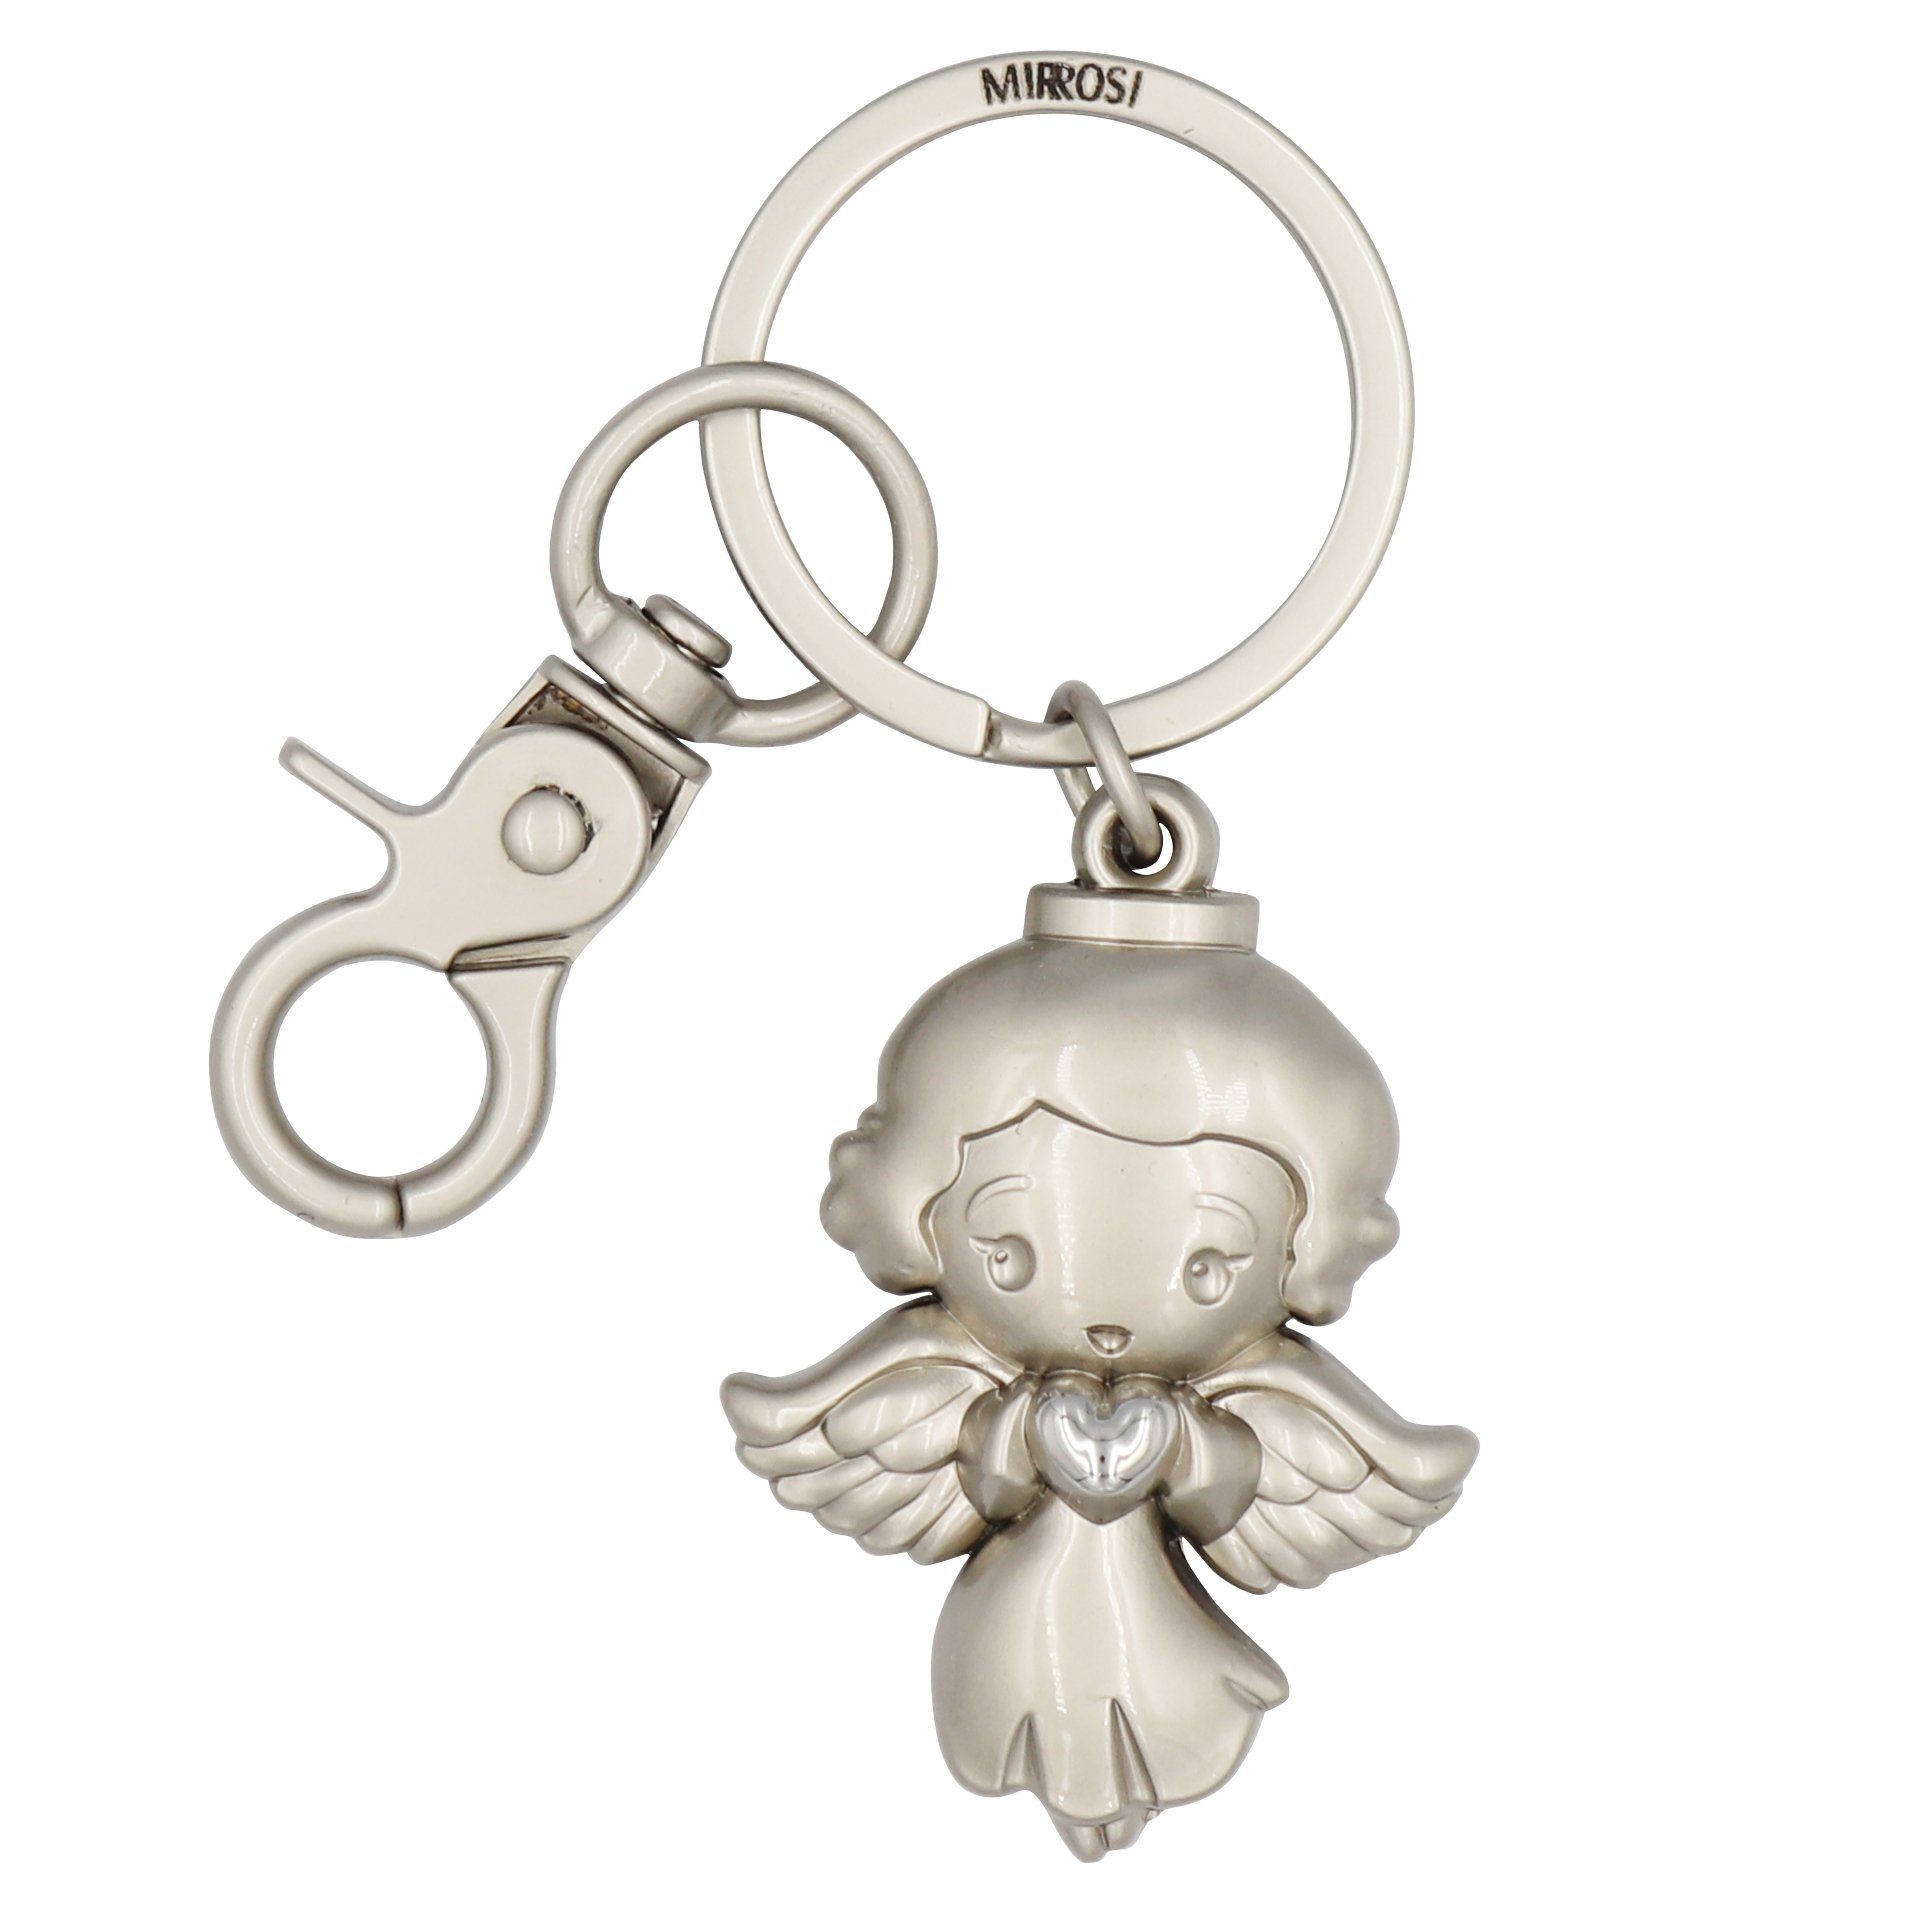 MIRROSI Schlüsselanhänger Schutzengel Engel "Elsa" mit Herzchen (Glückbringer aus Metall), mit praktischem Karabinerhaken Silber